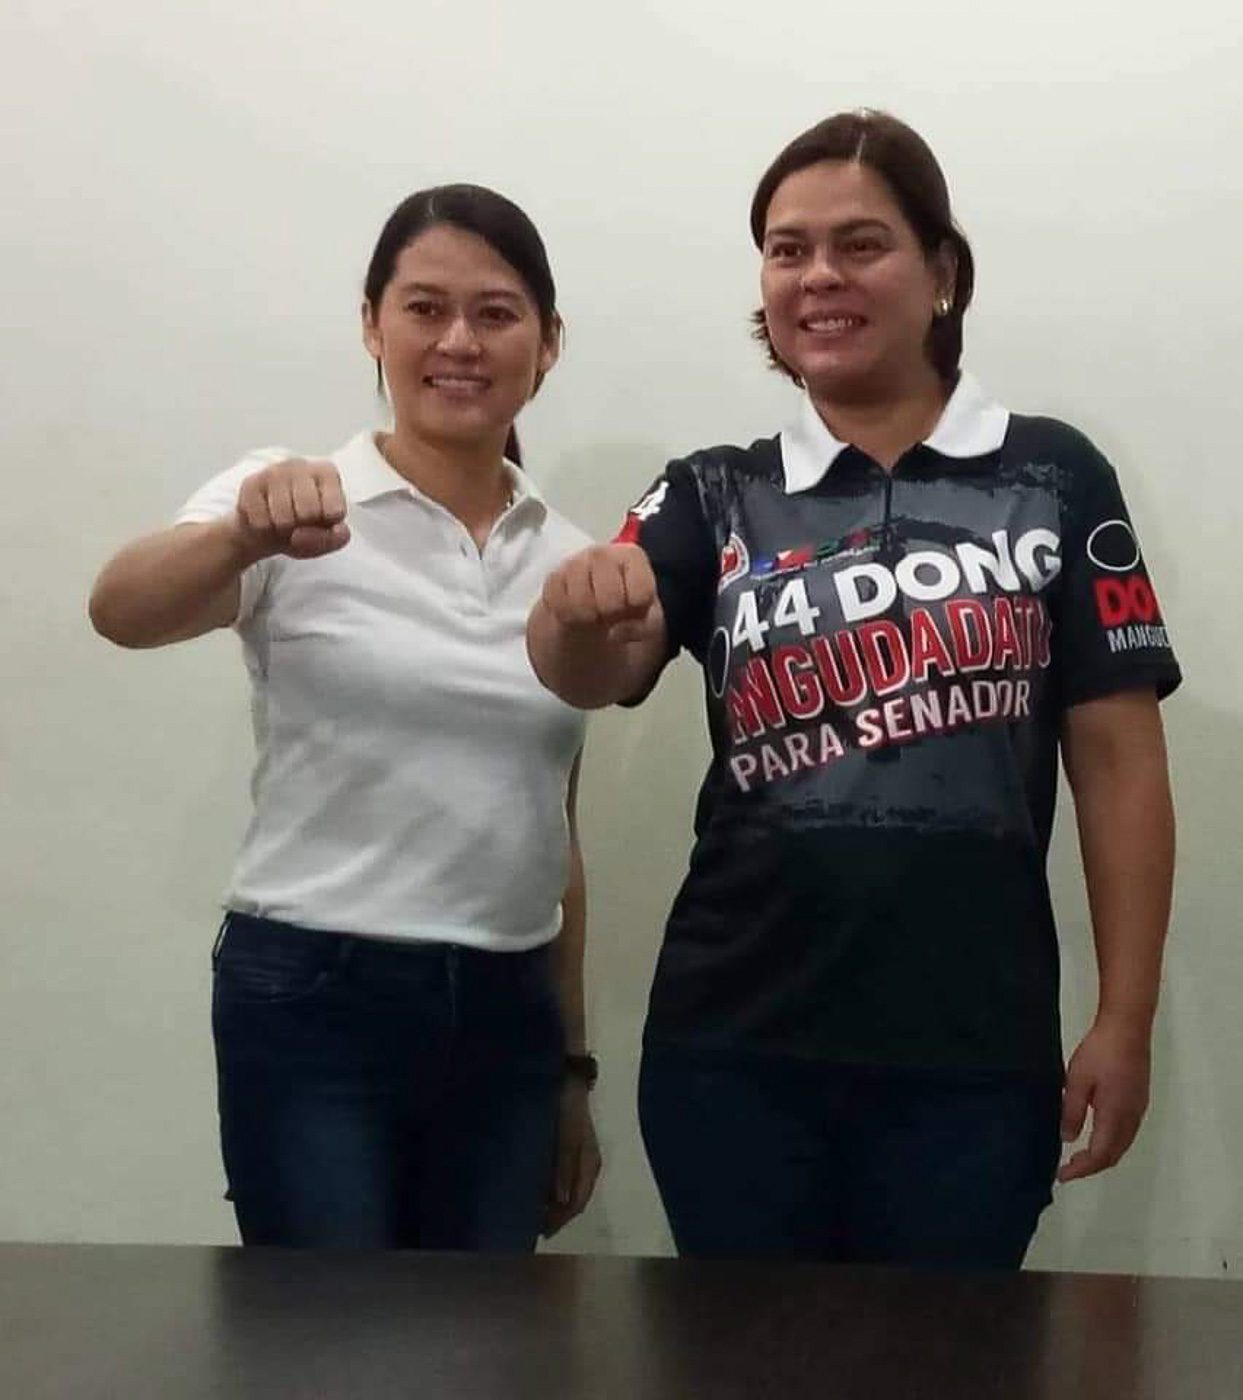 Duterte’s Girlie to run for Congress in Cagayan de Oro, congressman says